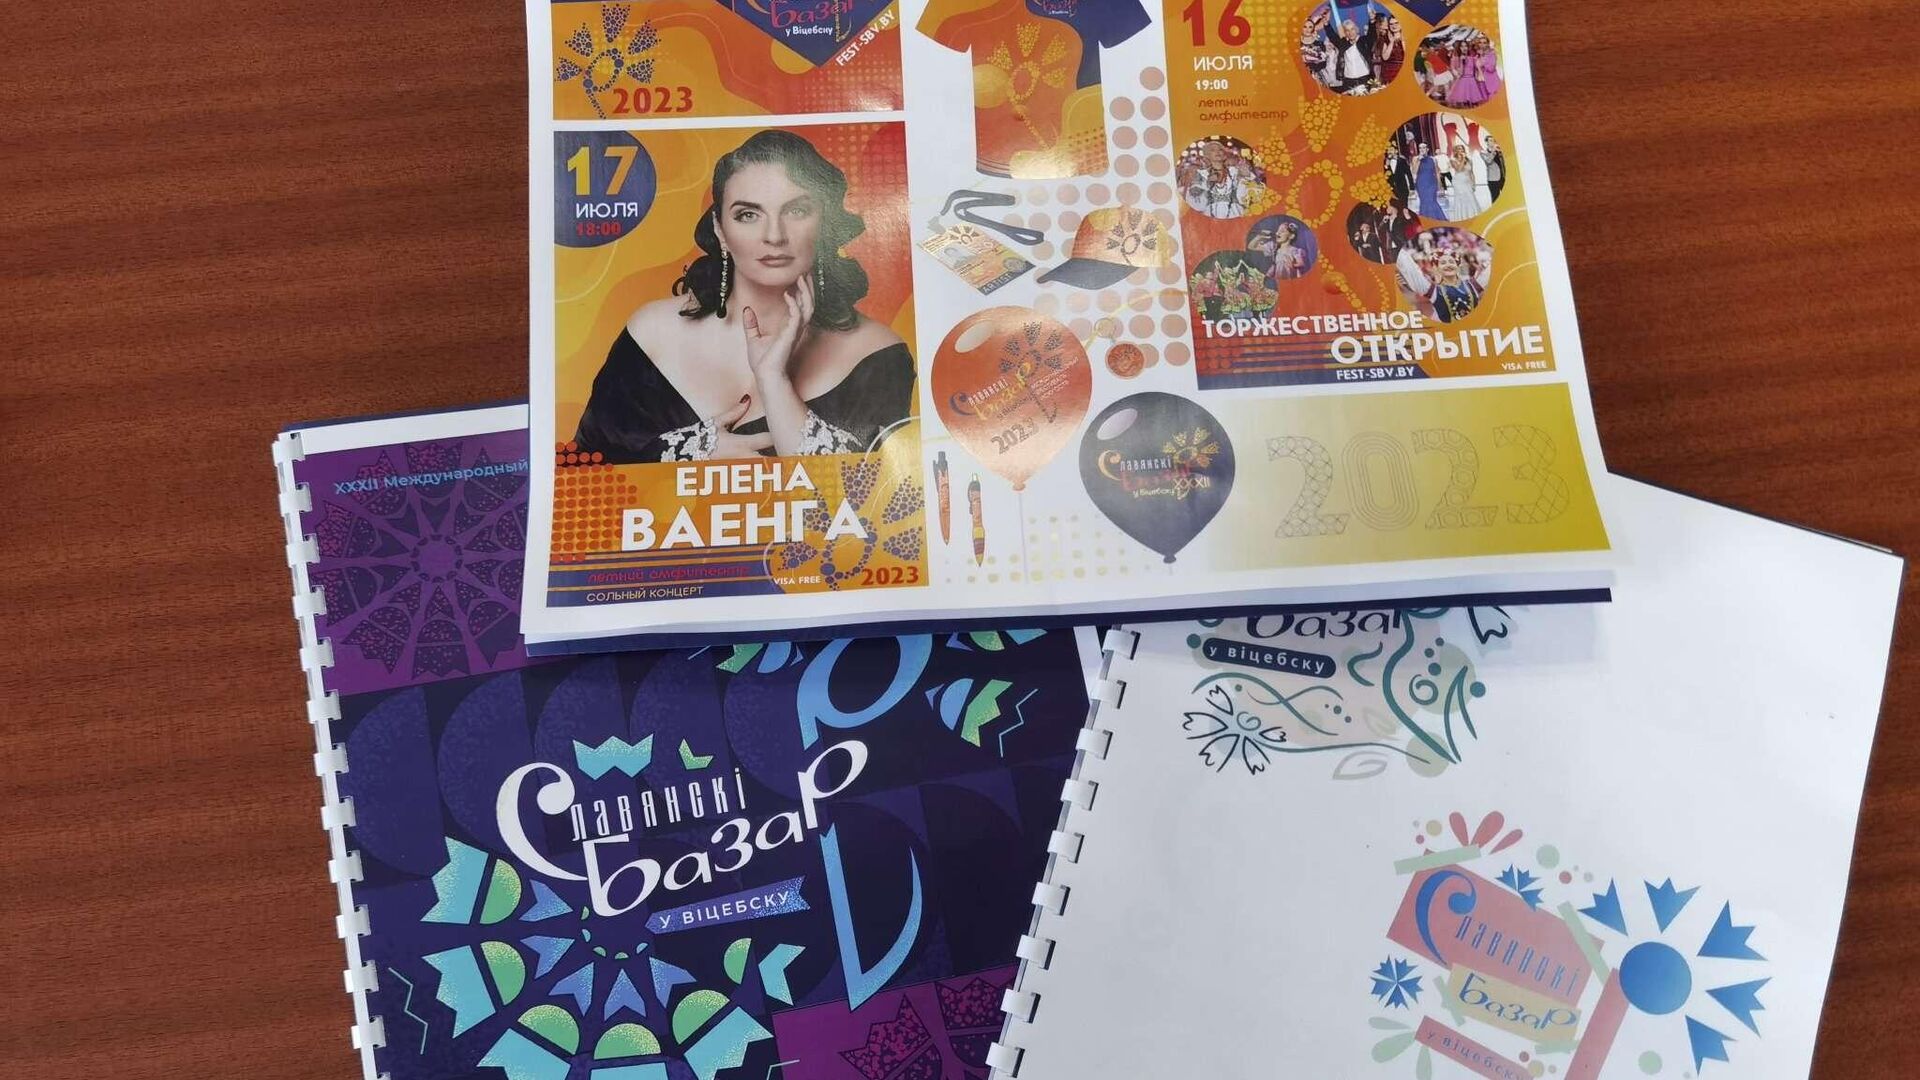 Организаторы Славянки подвели итоги конкурса по созданию логотипа - Sputnik Беларусь, 1920, 12.01.2023